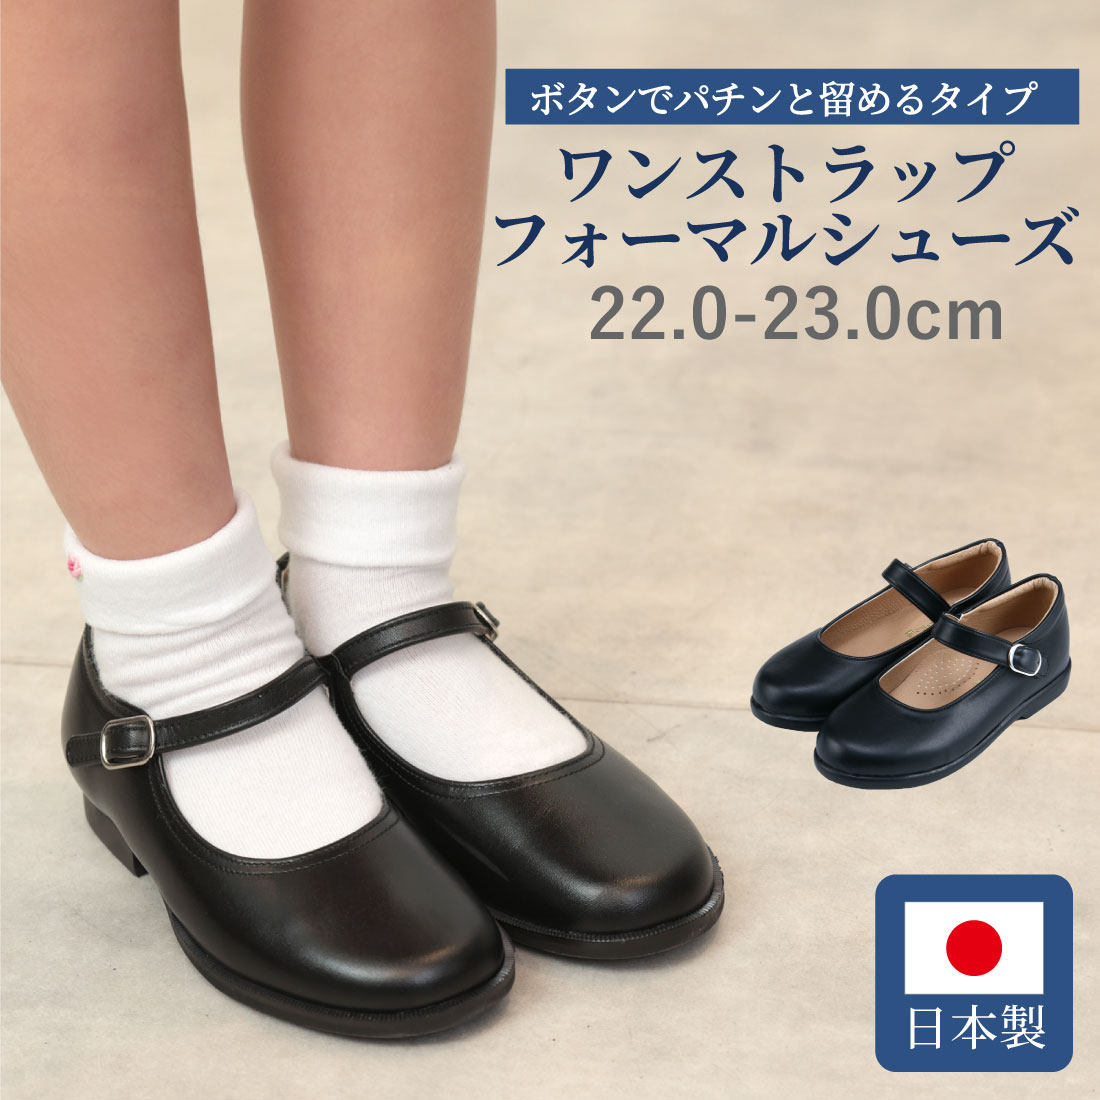 【楽天市場】百貨店取扱い 正規品 KID CORE キッドコア 靴磨き 